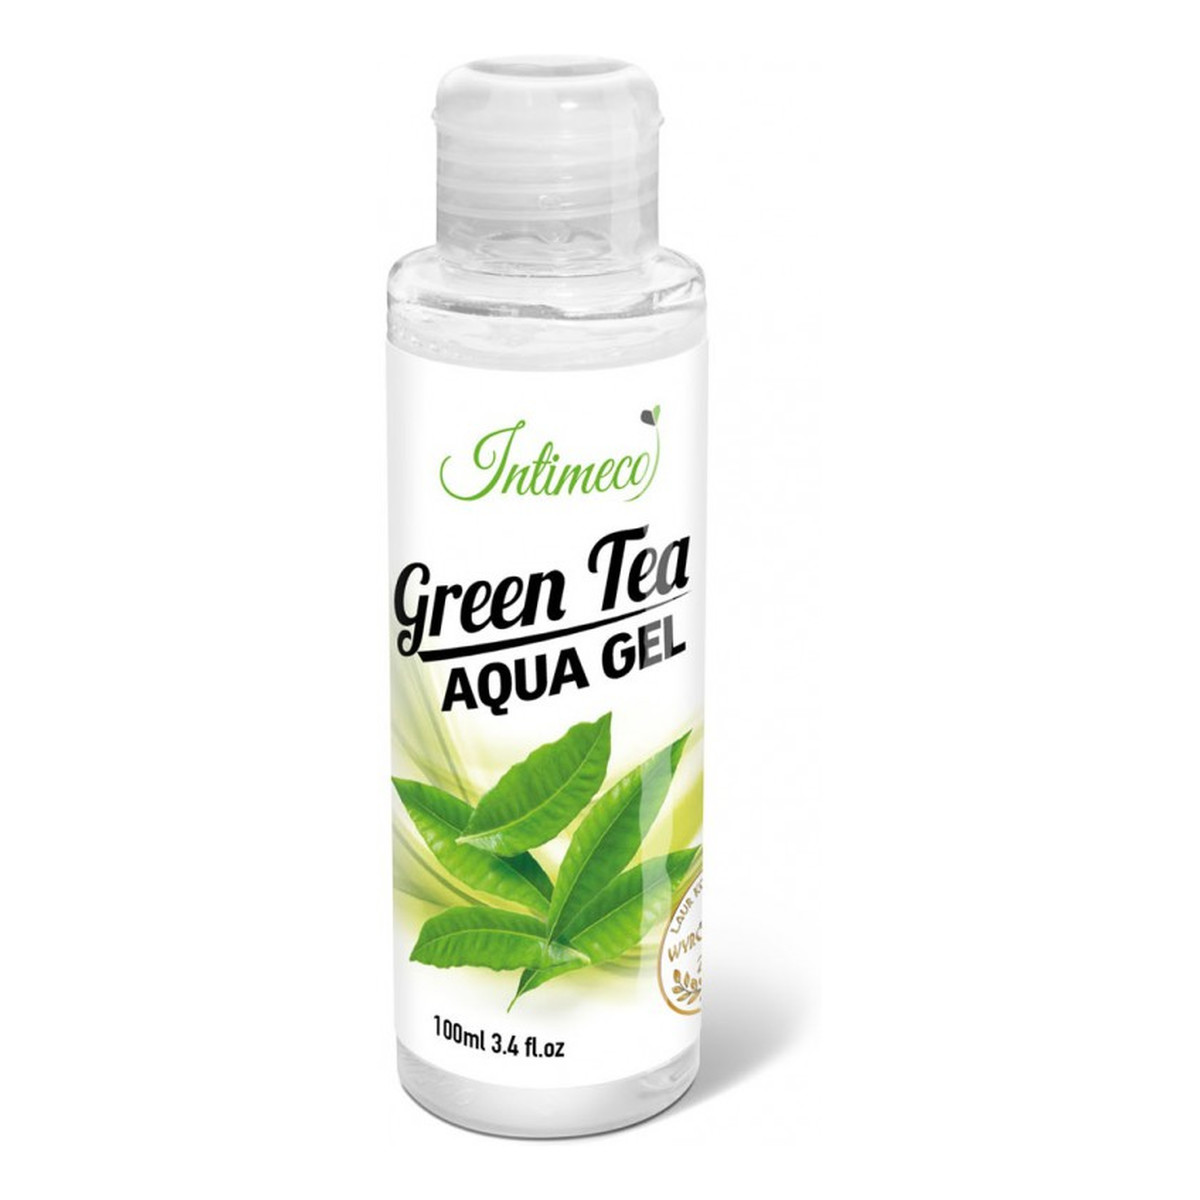 Intimeco Green Tea Aqua Gel nawilżający Żel intymny o aromacie zielonej herbaty 100ml